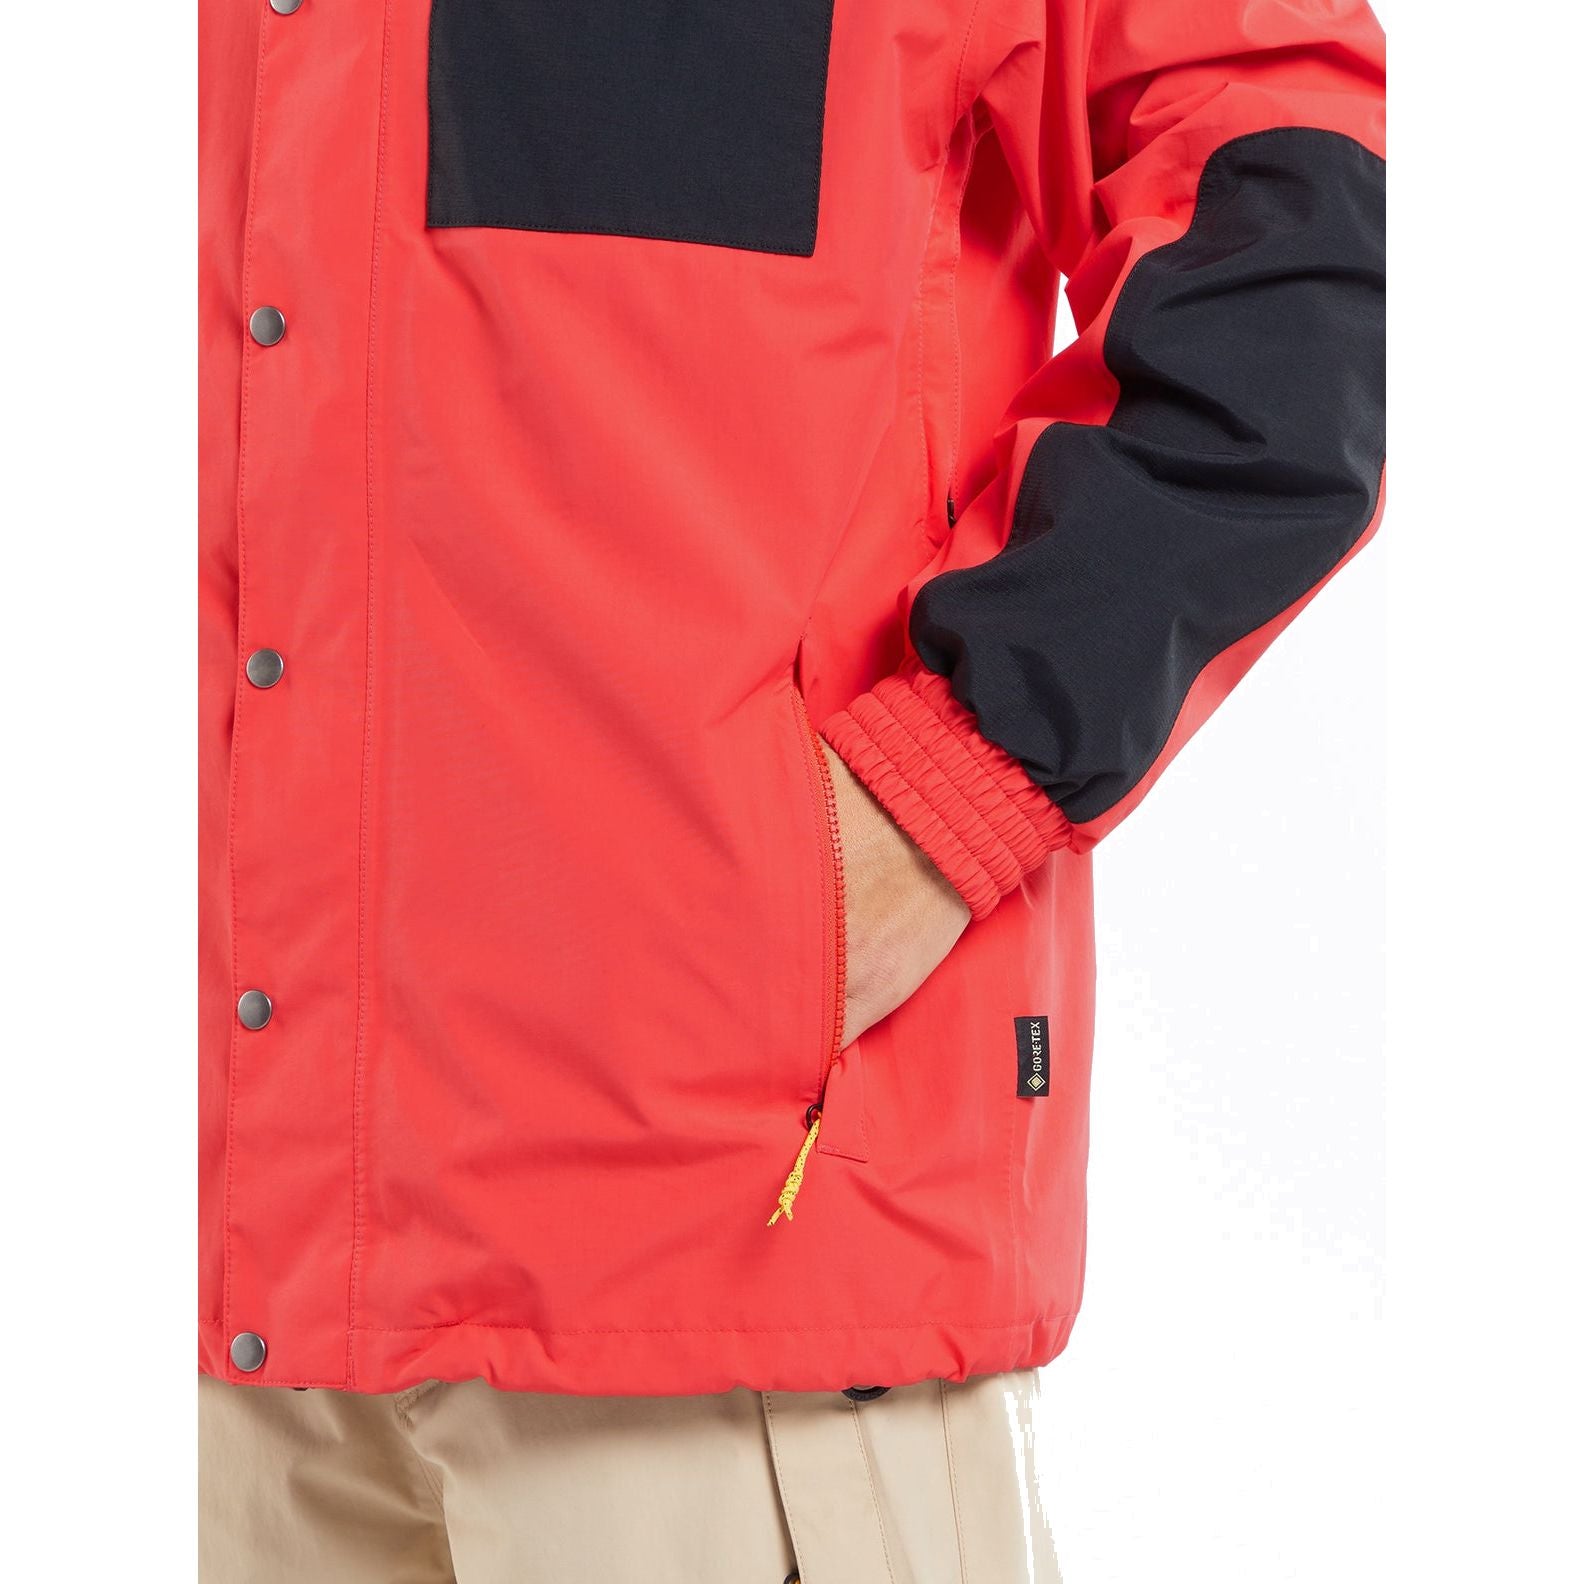 Volcom Longo Gore-Tex Jacket Khakiest Snow Jackets